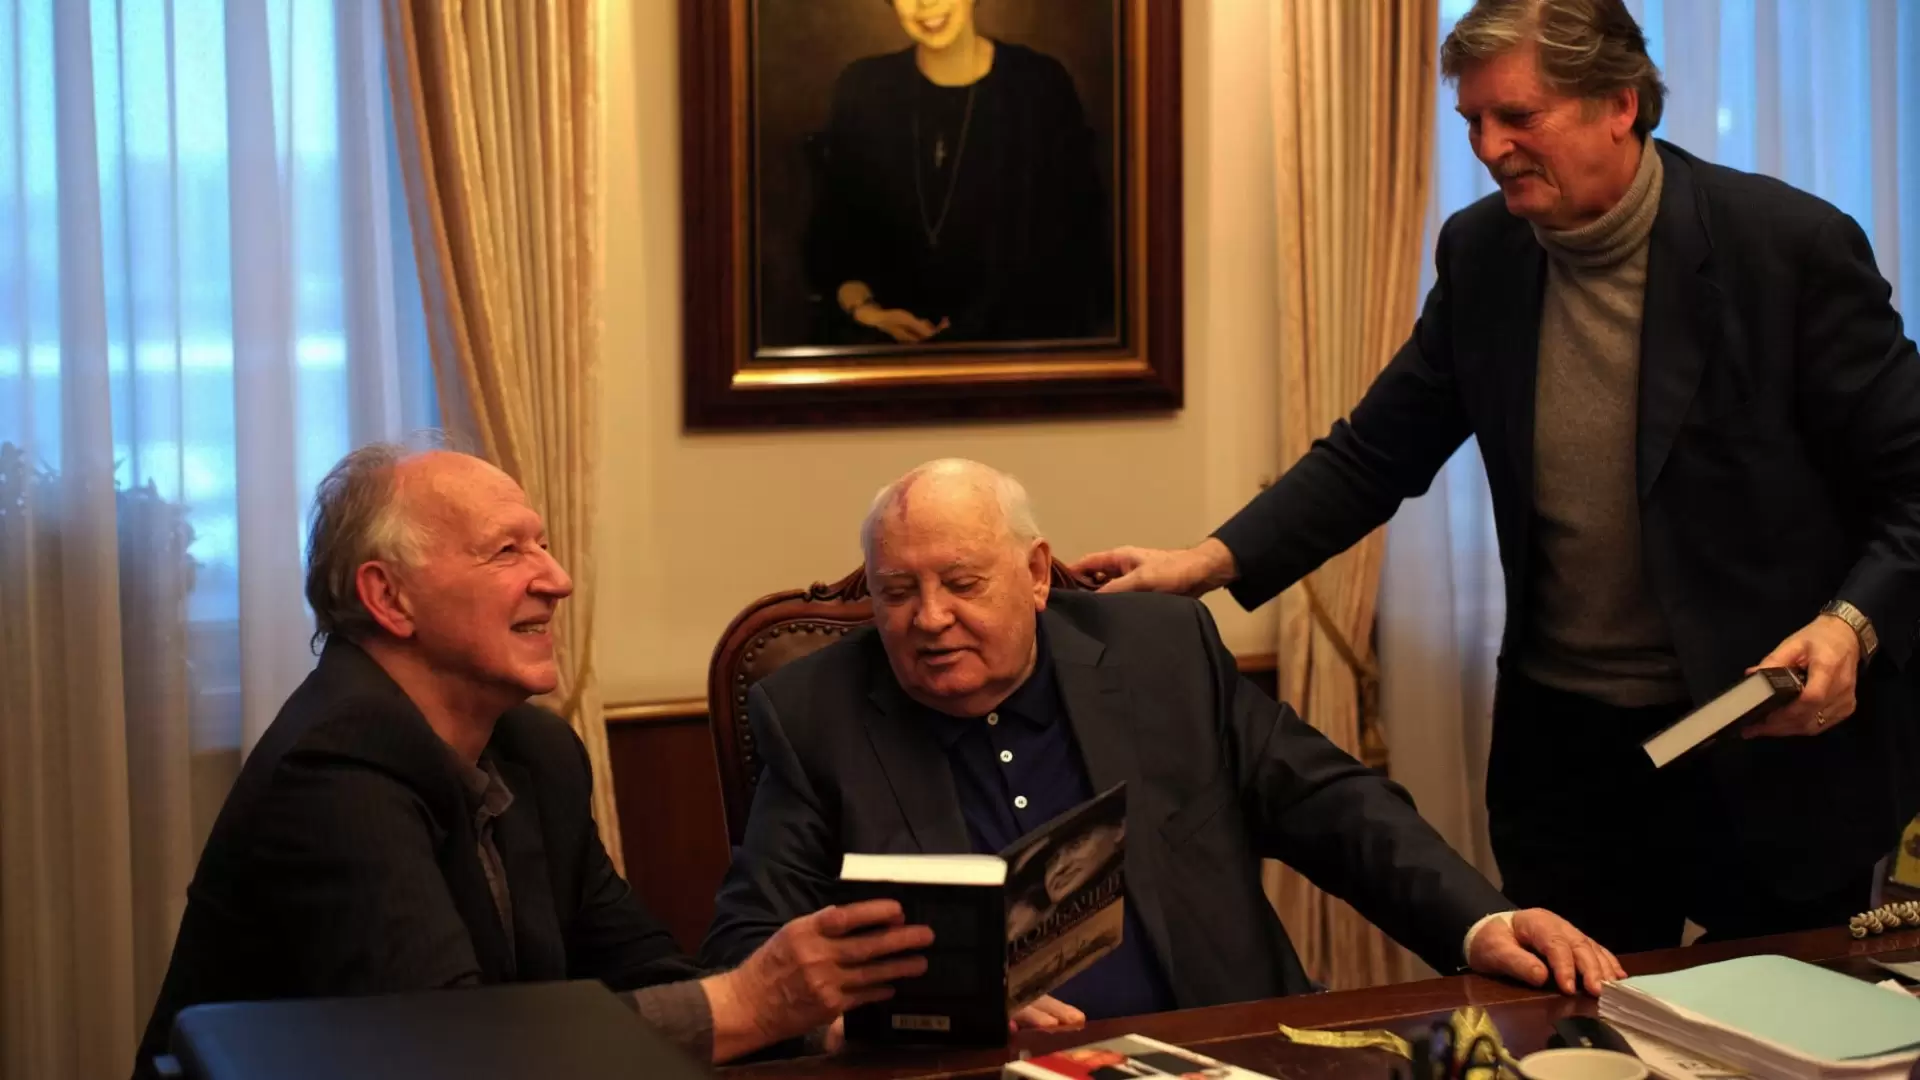 دانلود مستند Meeting Gorbachev 2018 (ملاقات با گورباچف) با زیرنویس فارسی